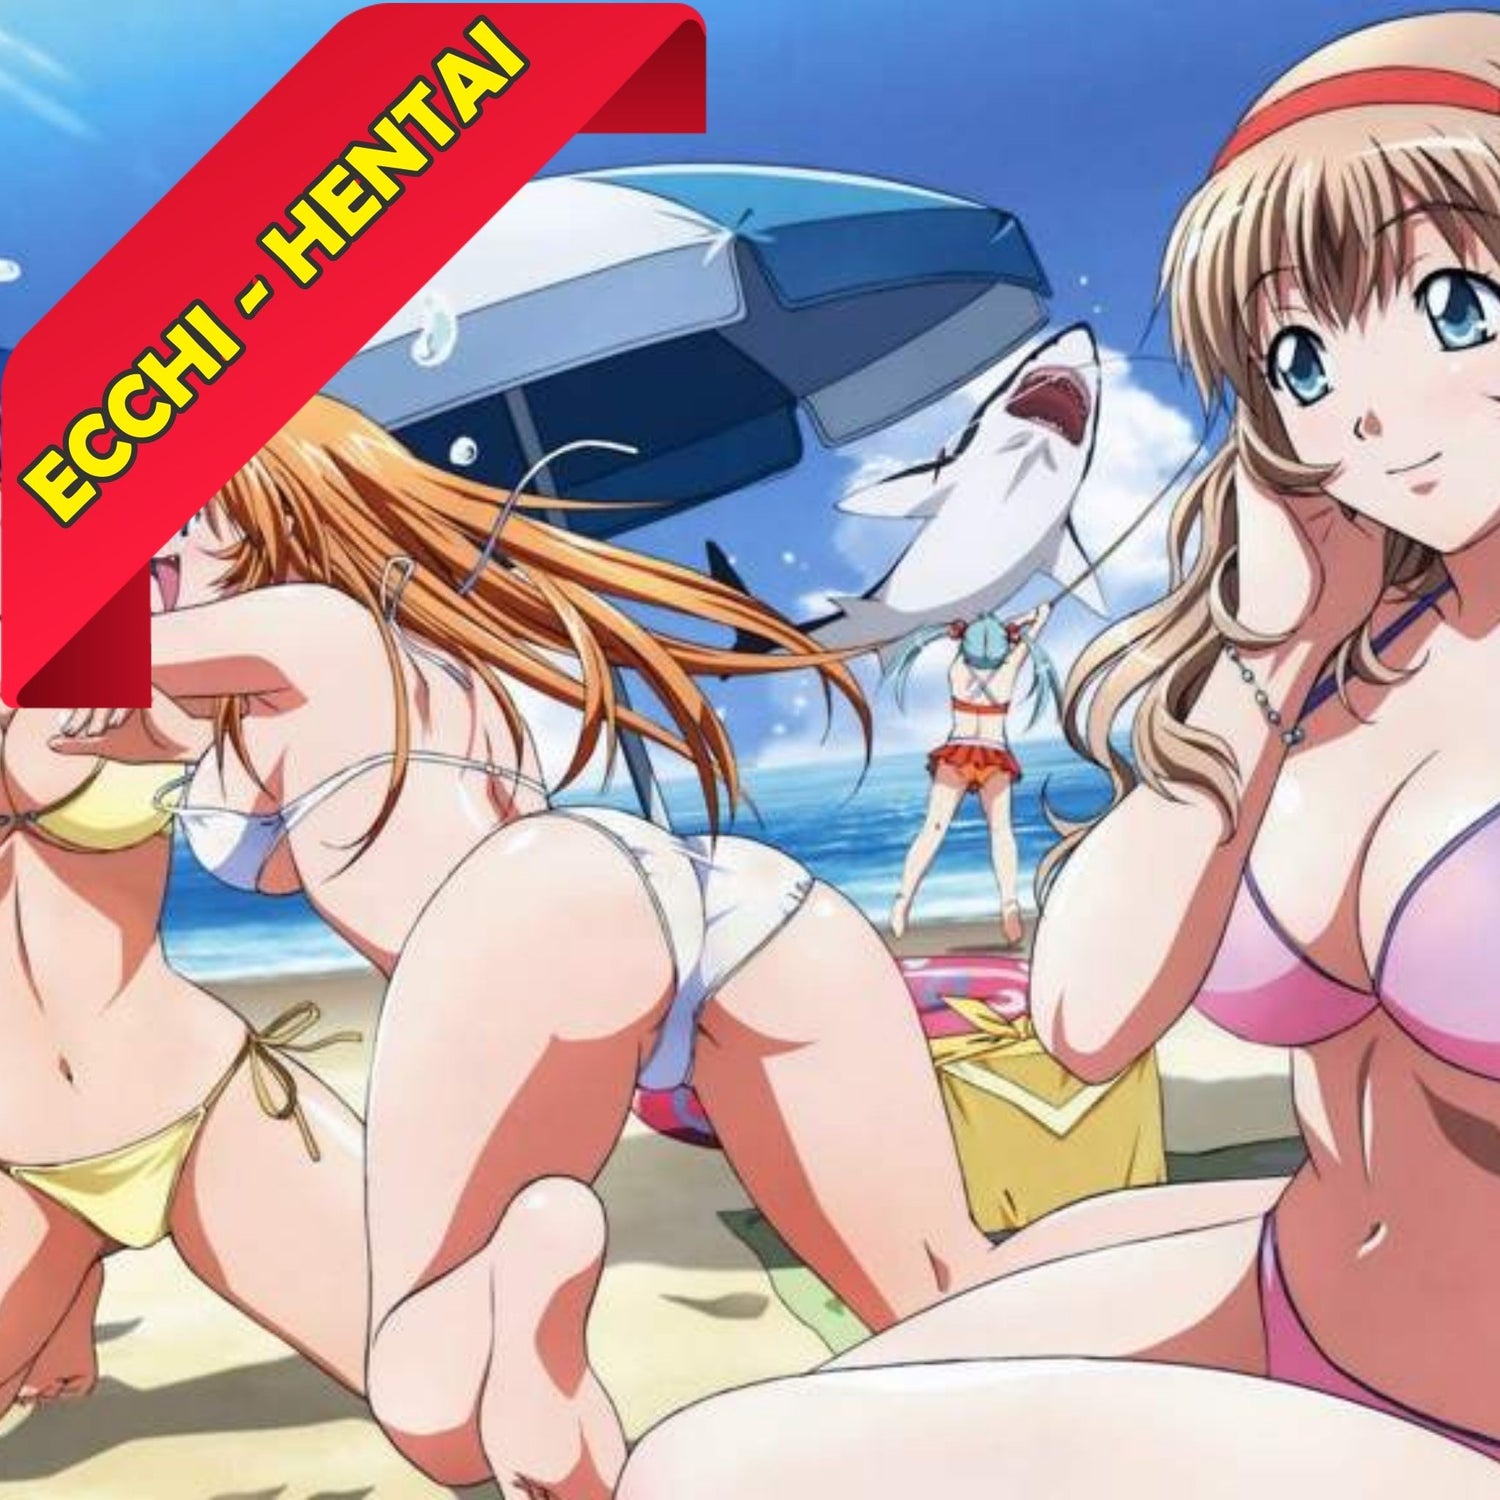 Manga Cash propose une grande variété de lots d'Ecchi - Hentai de qualité à prix abordables